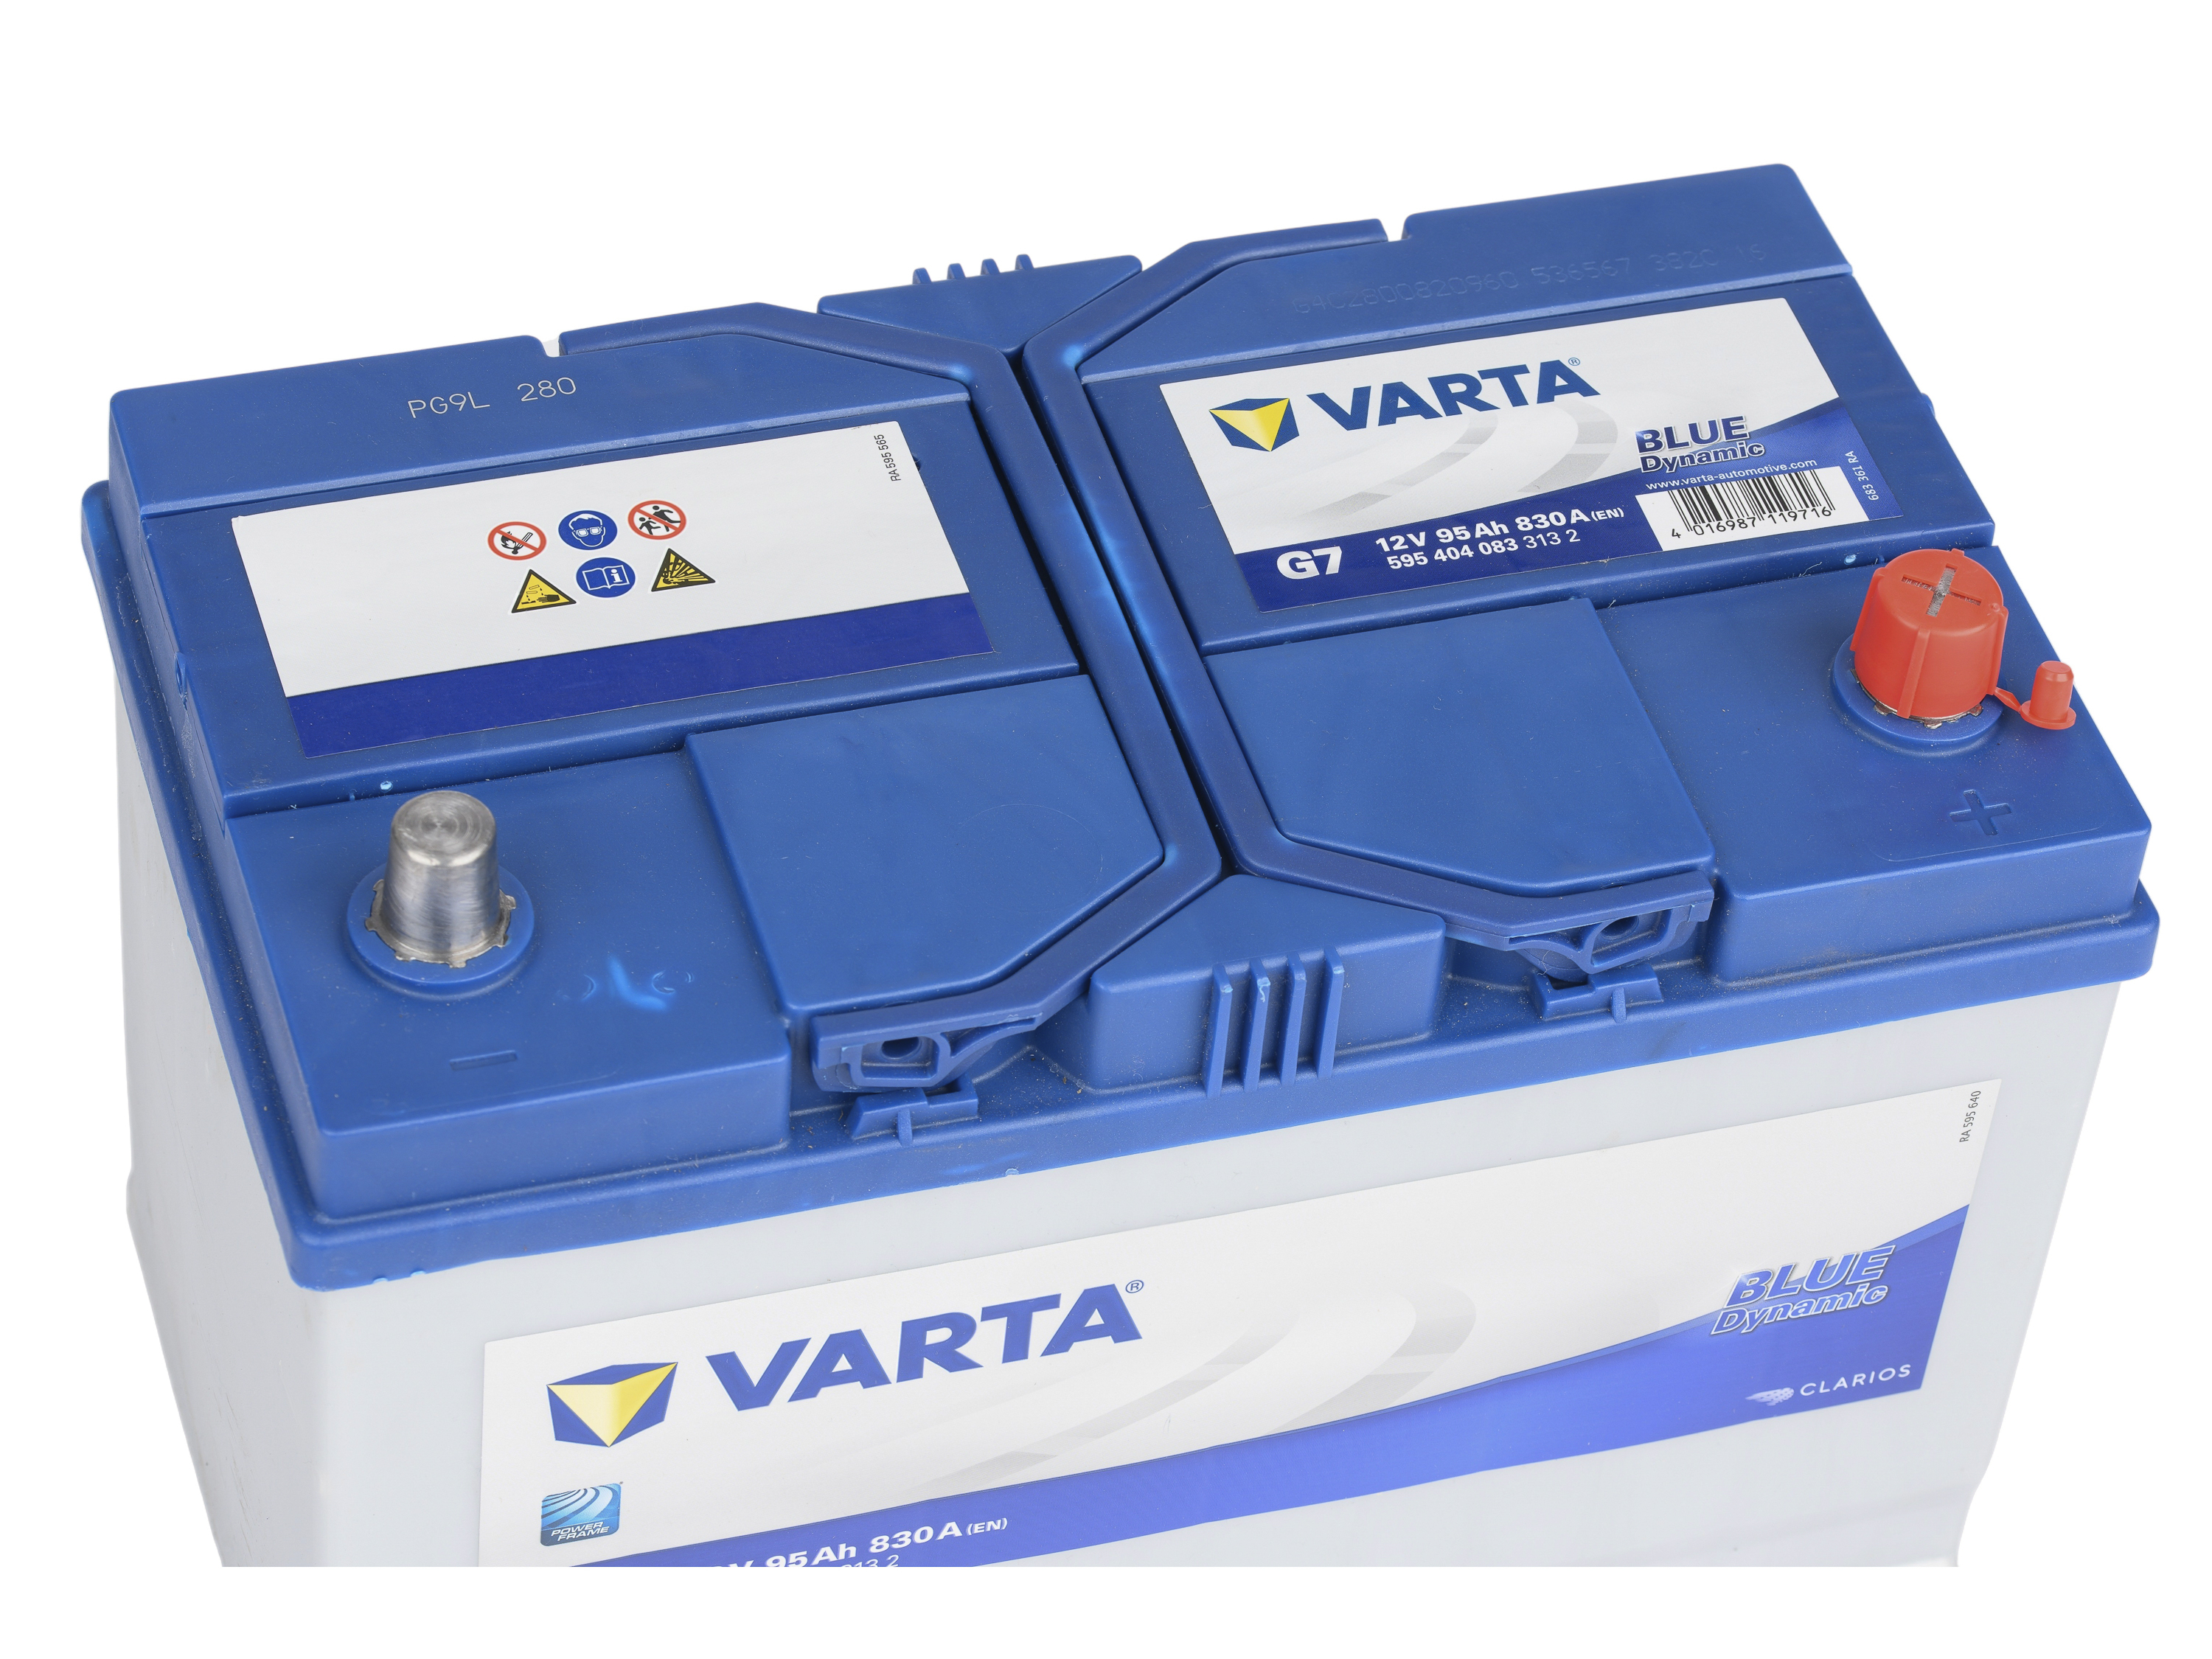 VARTA Batterie Blue Dynamic G7 595.404.083 12V/95AH